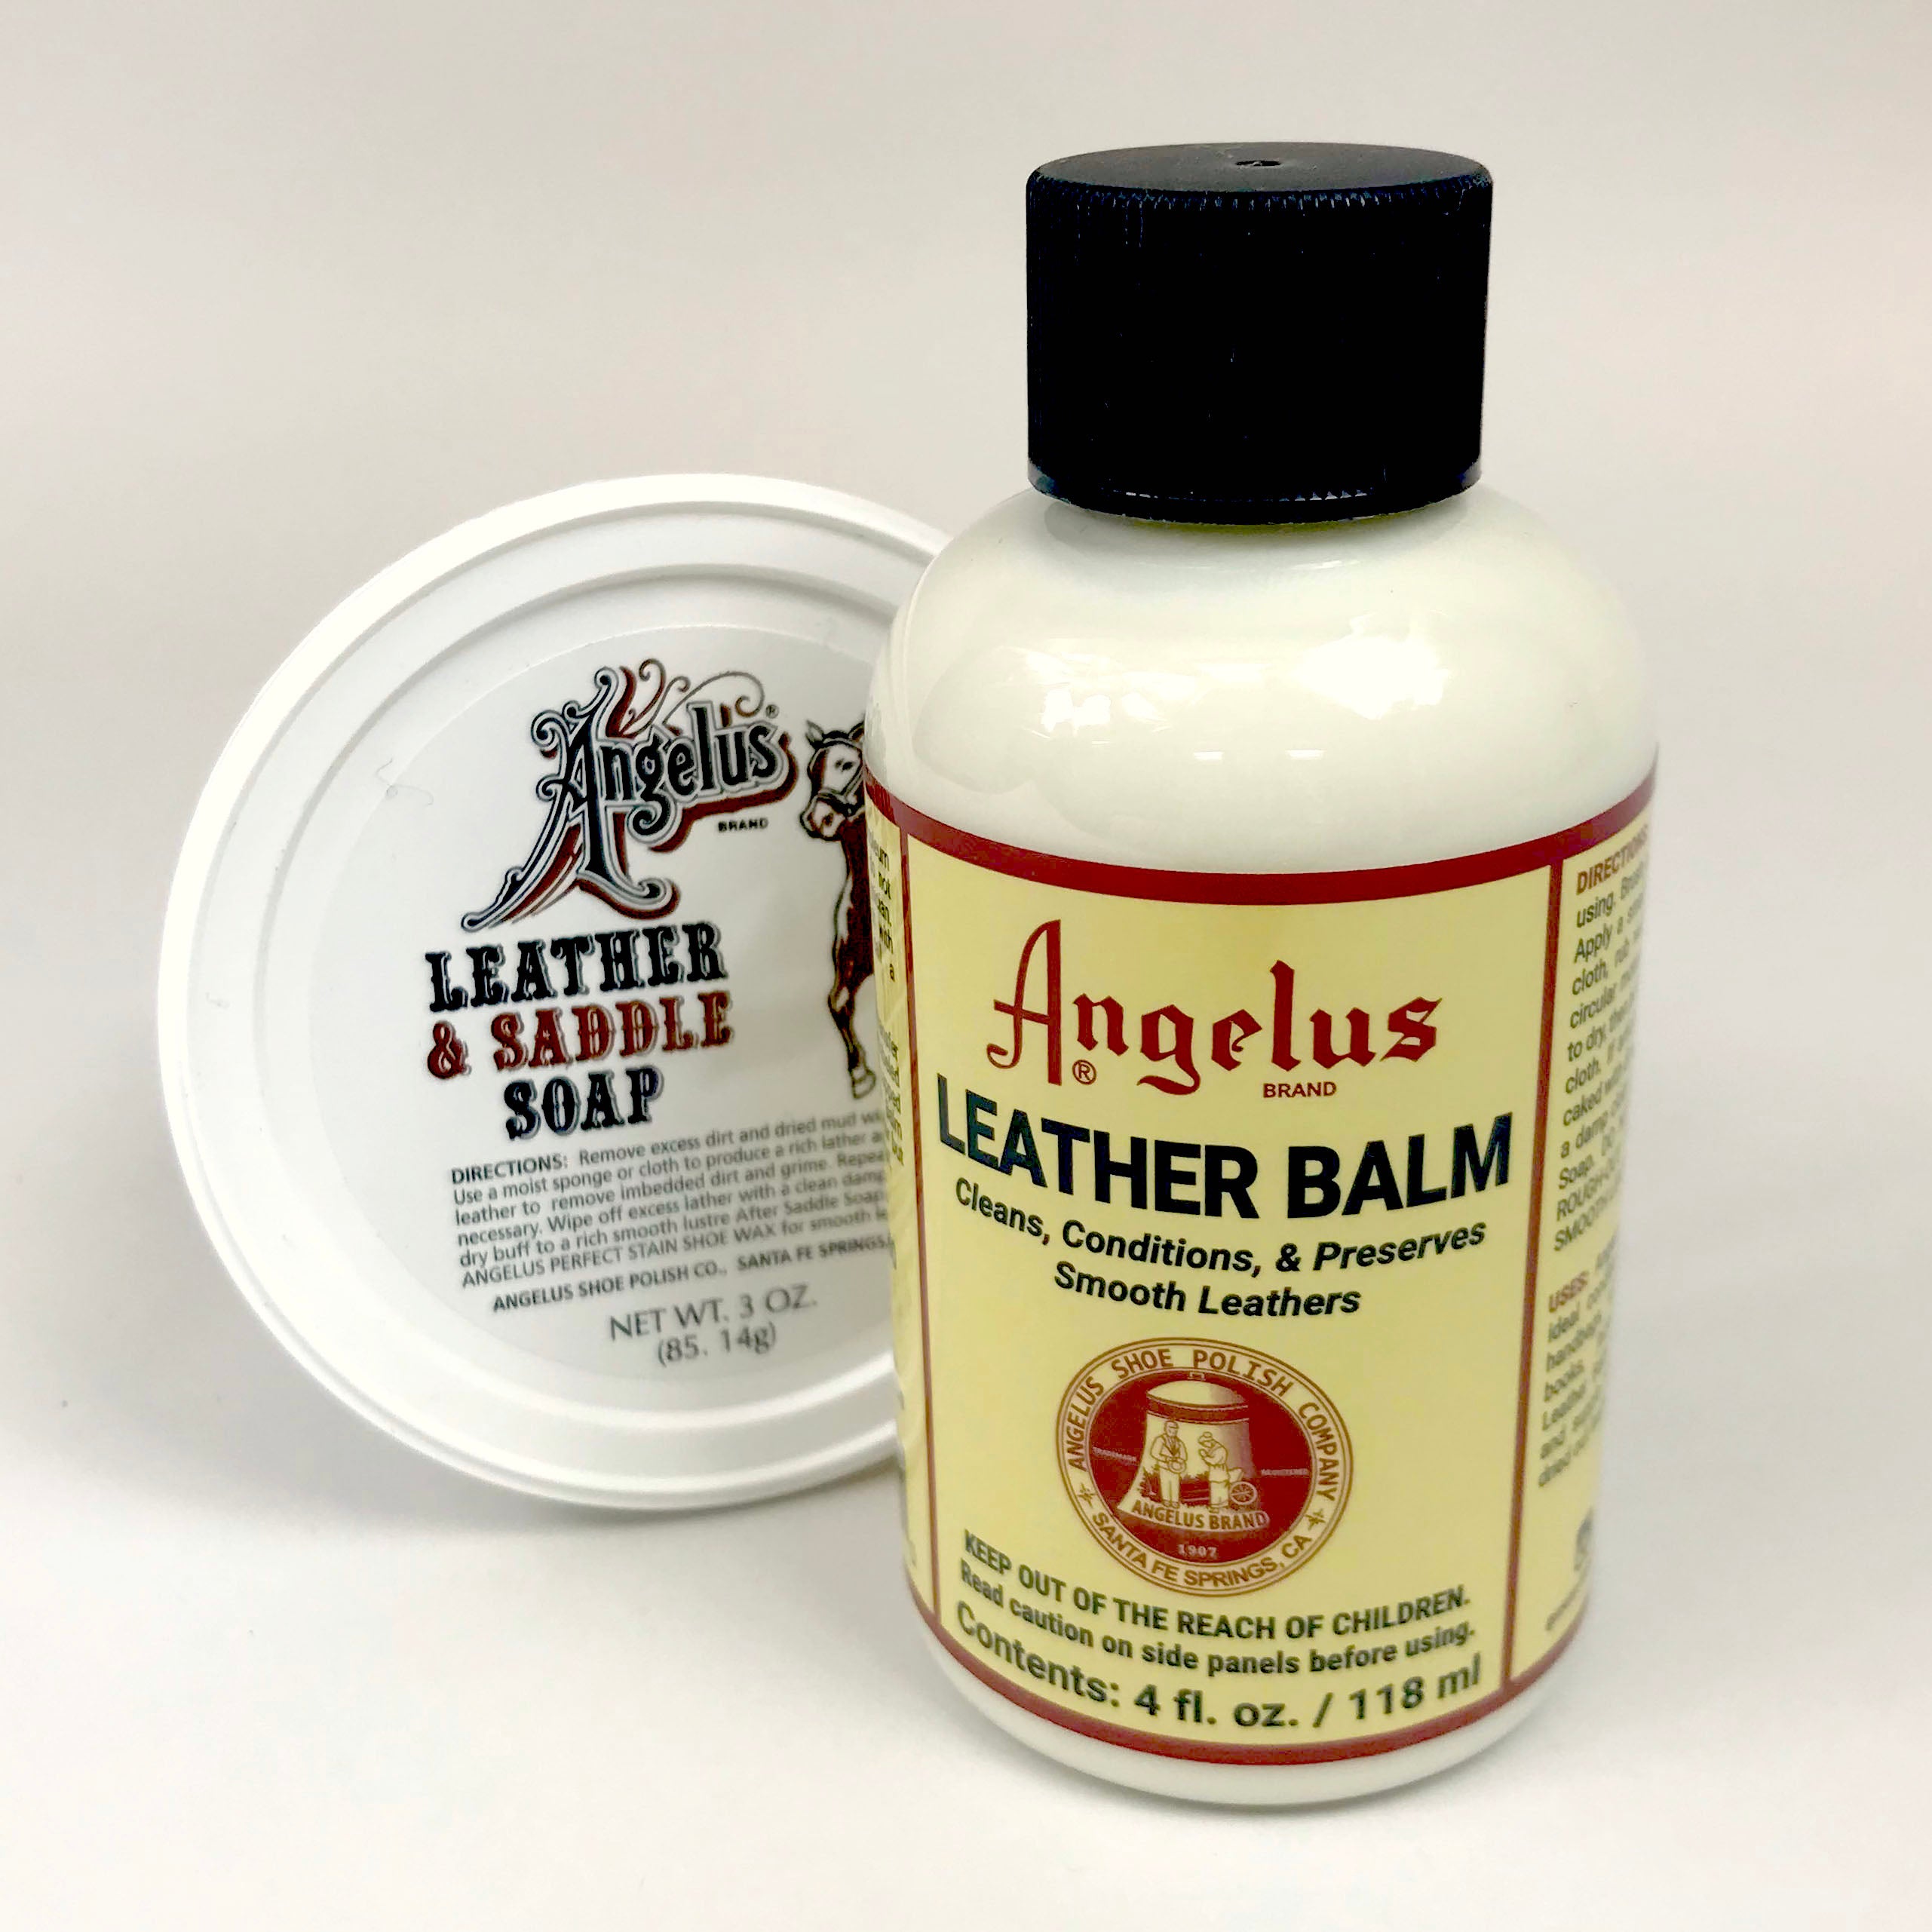 Saddle soap and leather balm – utilitybrighton